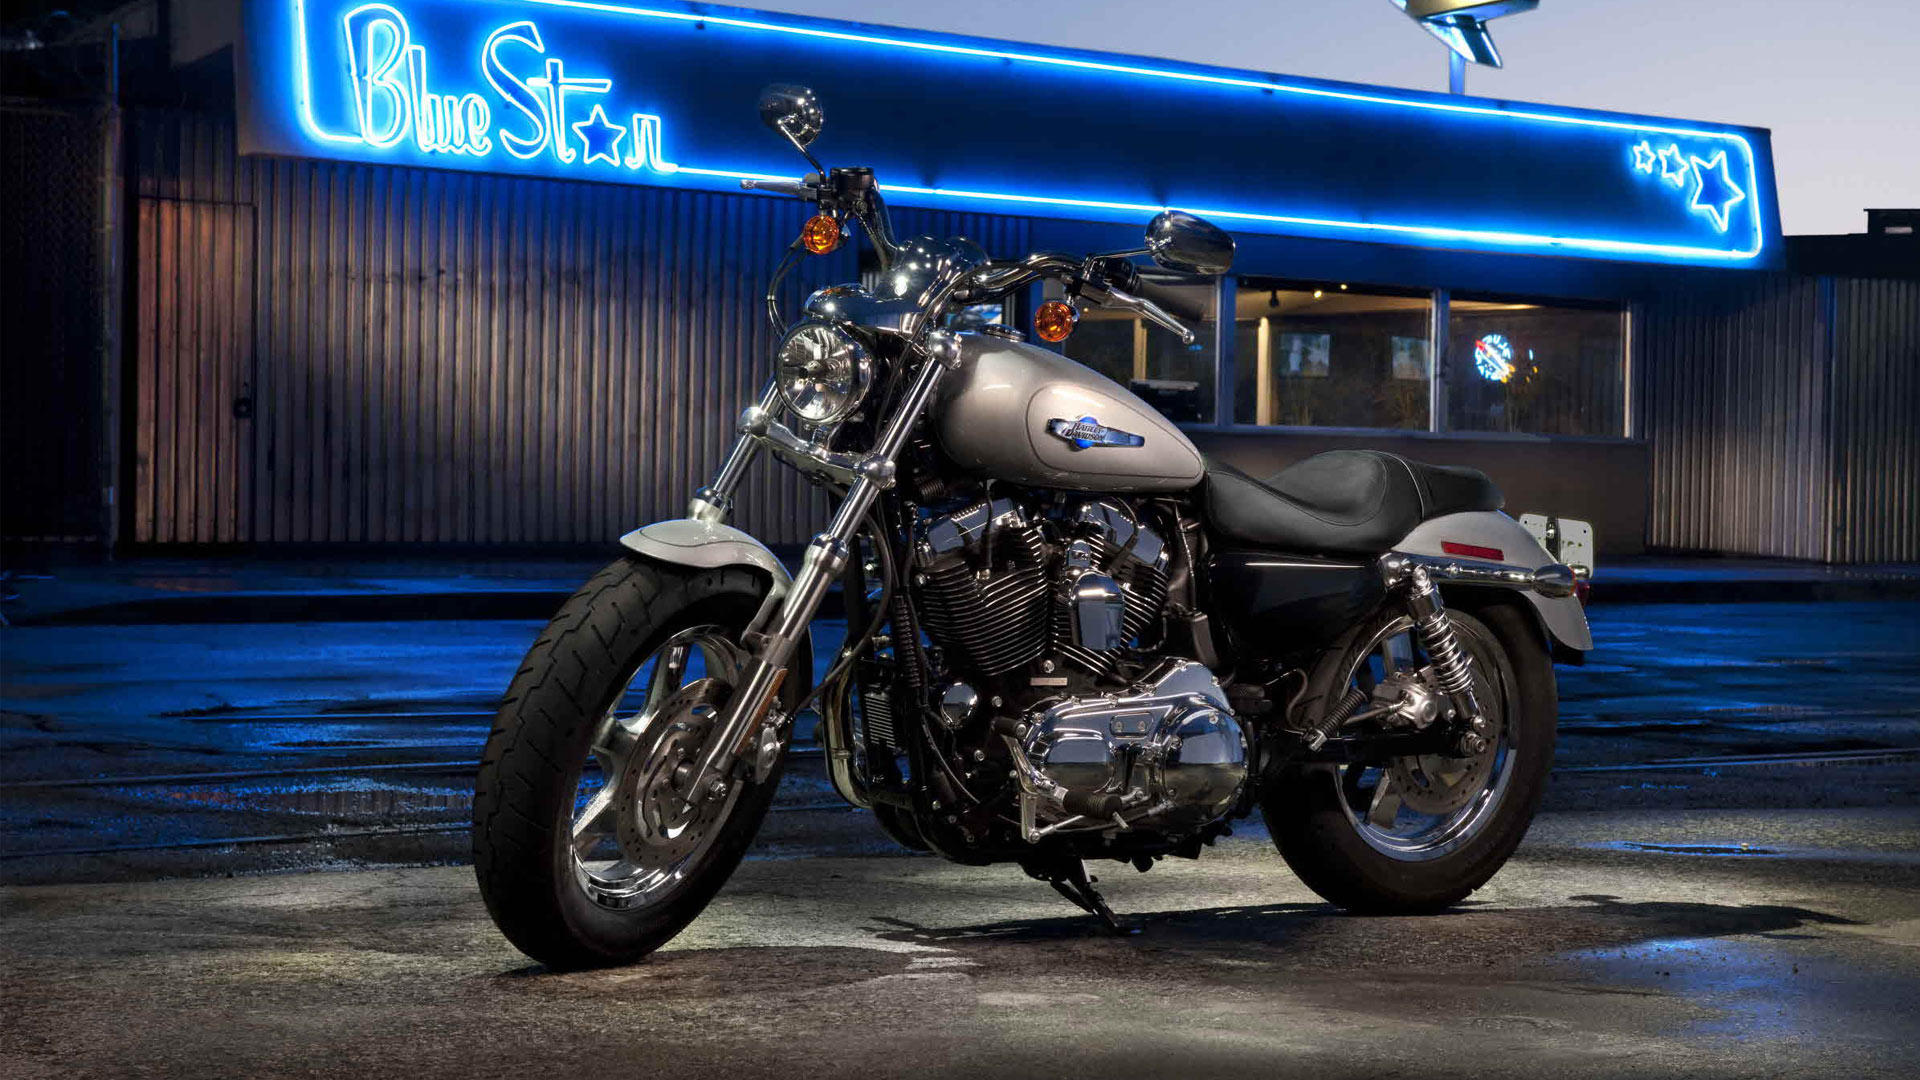 2012 Harley Davidson Sportster 1200 Custom wallpaper   981561